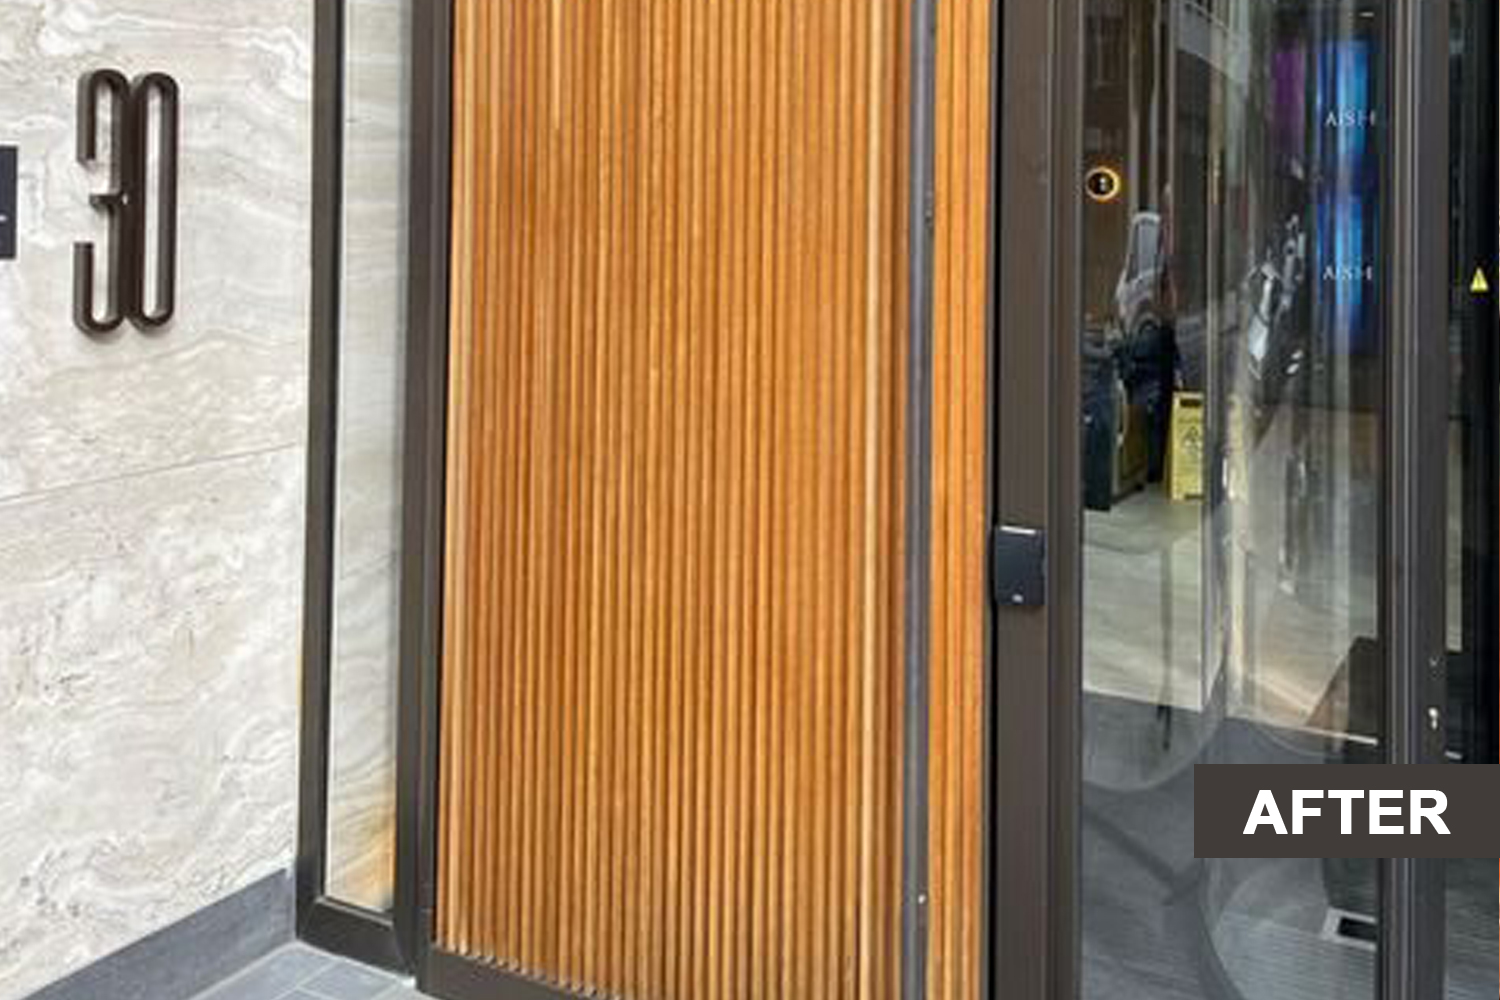 A wooden panel door after restoration